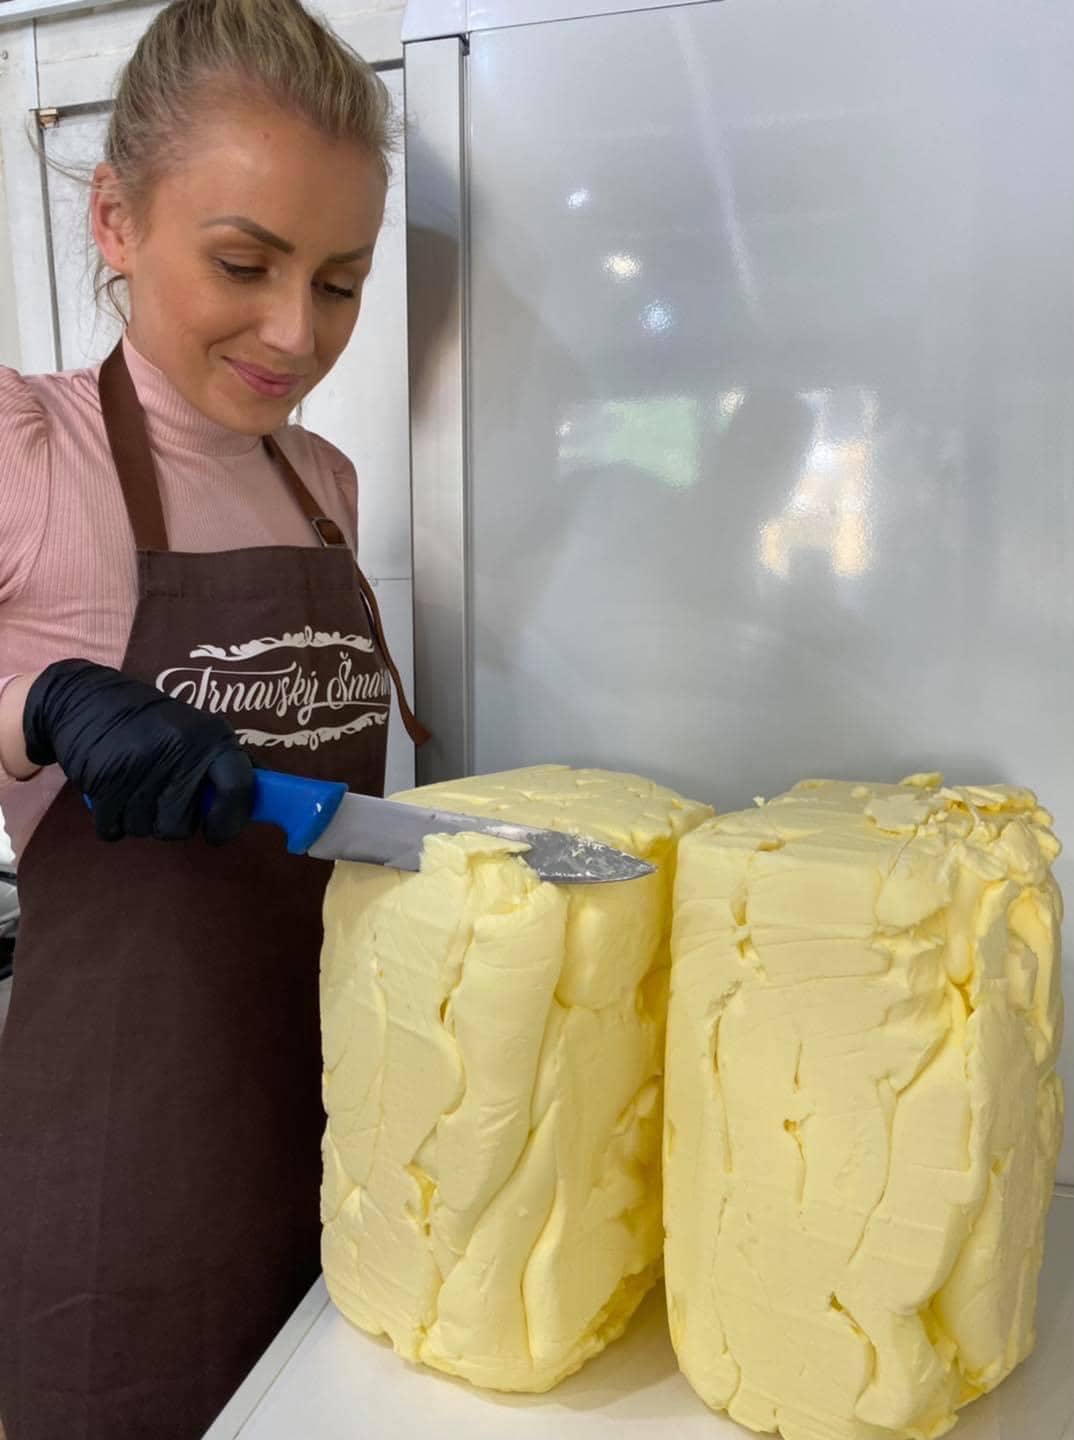 Trnavský šmarn maslo a výroba